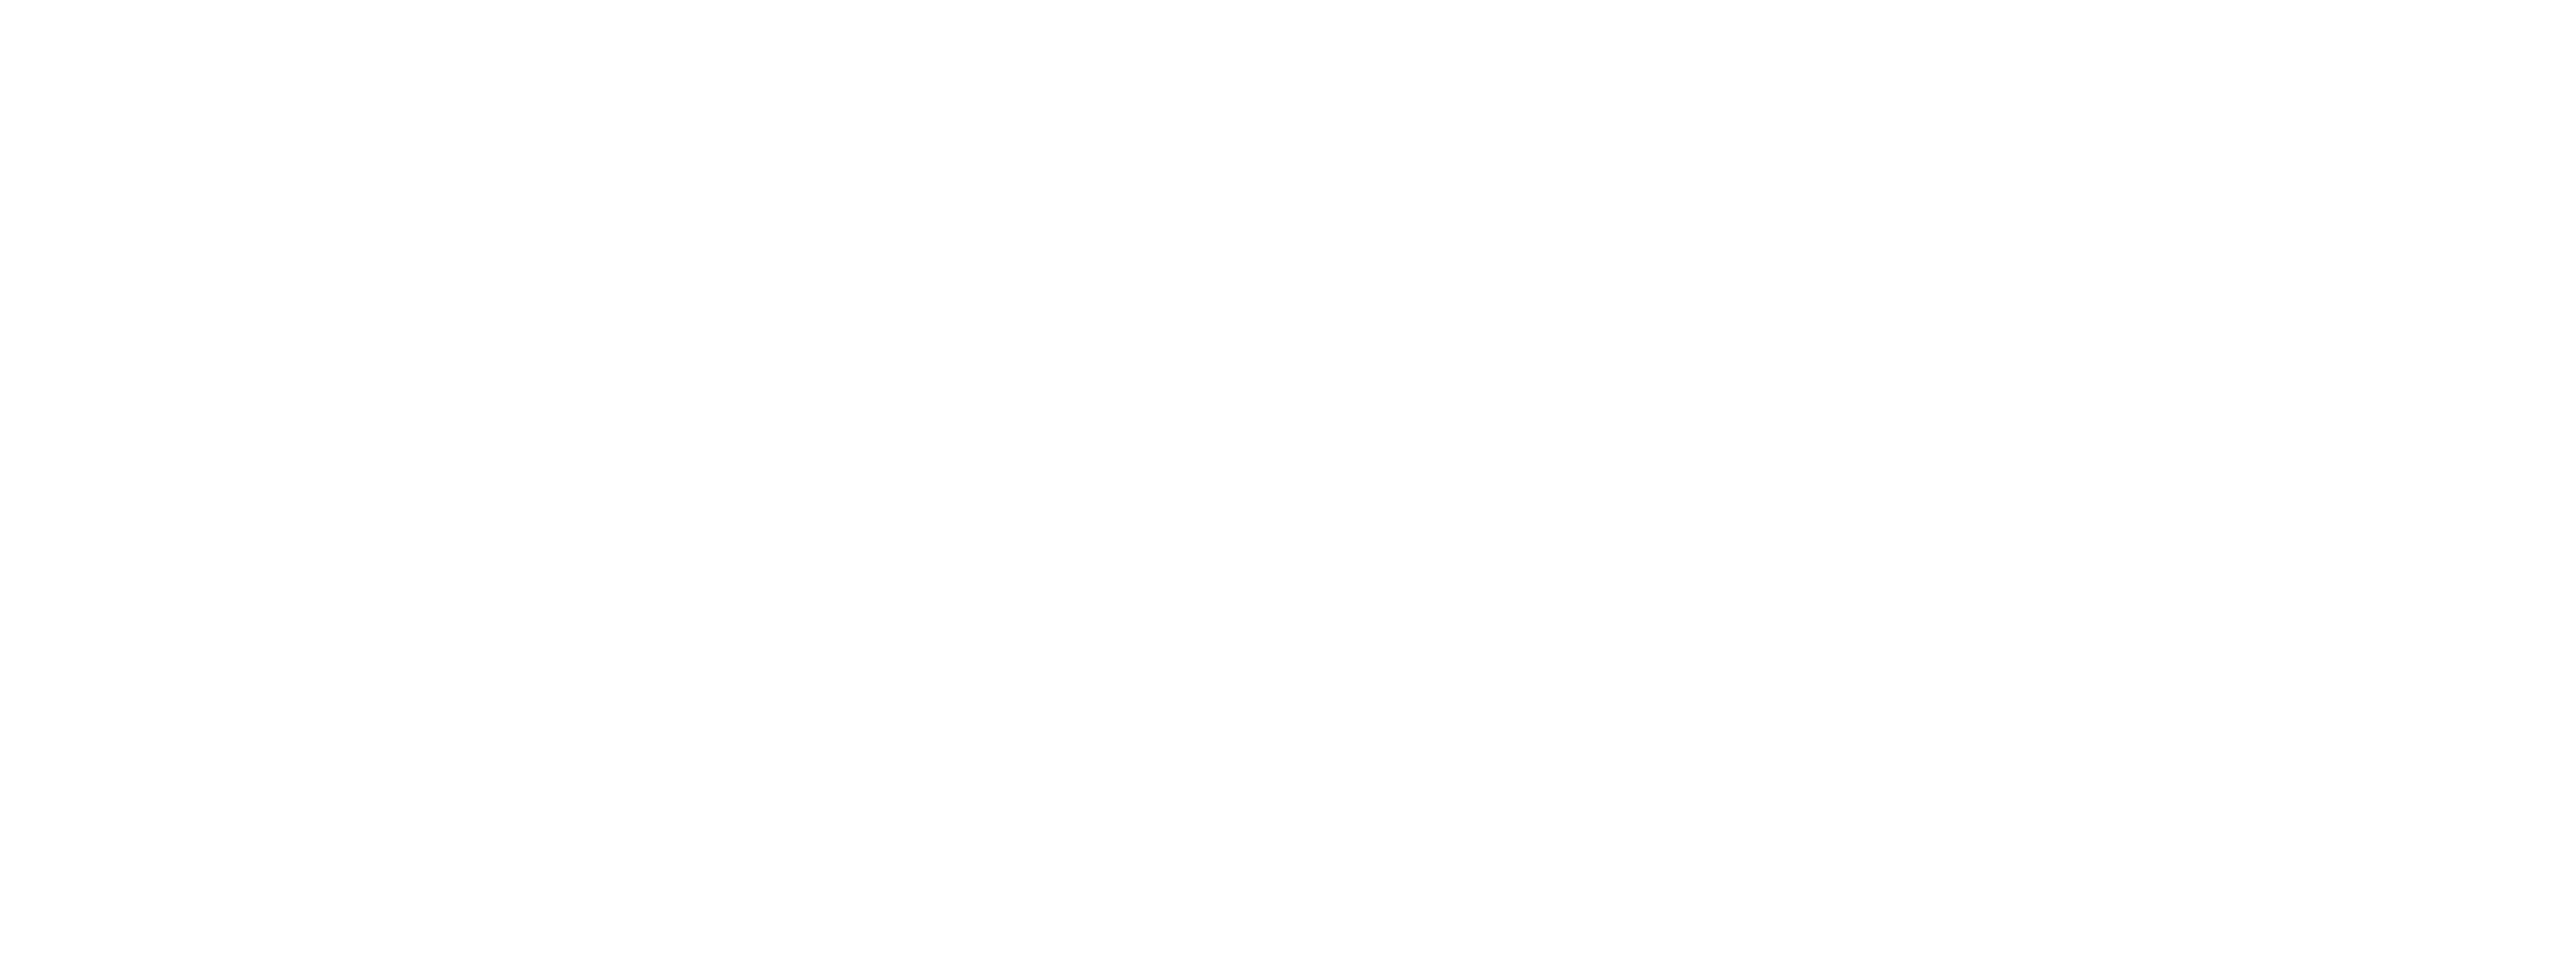 Firstnet logo 06.15.21-01